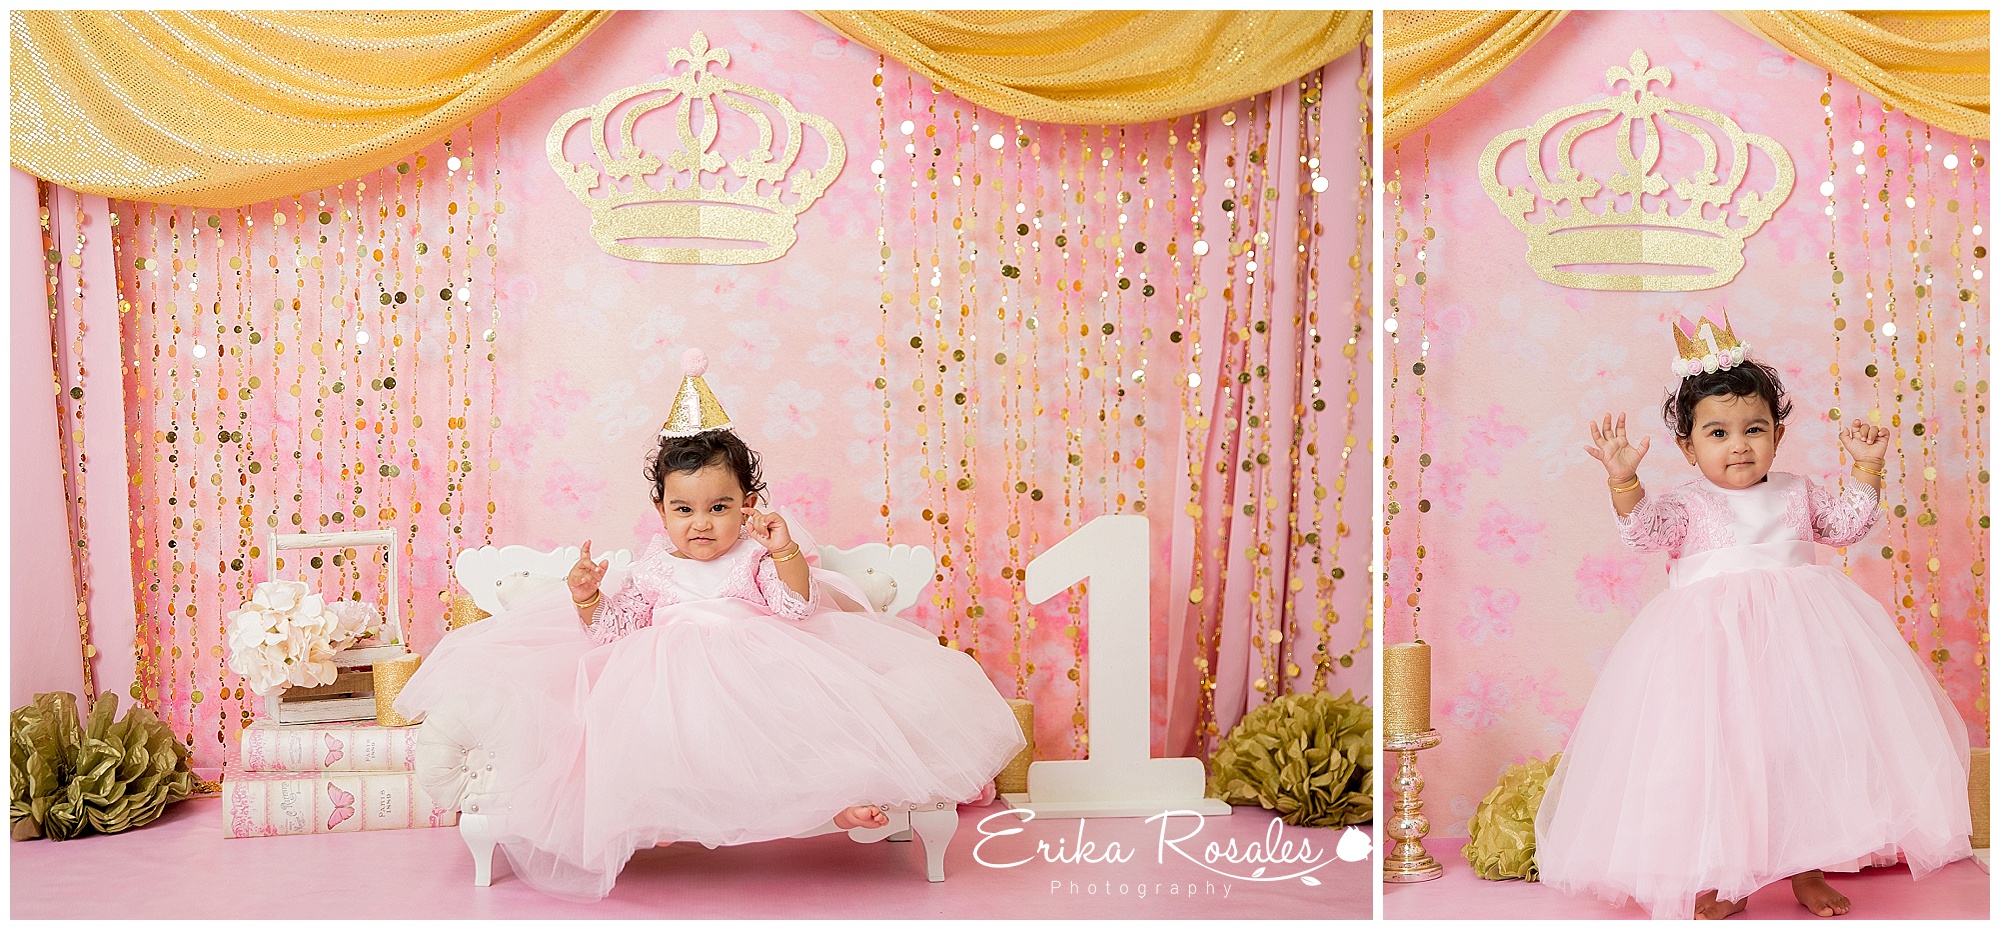 Smash cake Princess theme - Pink and Gold-Baby Photographer The Bronx ...